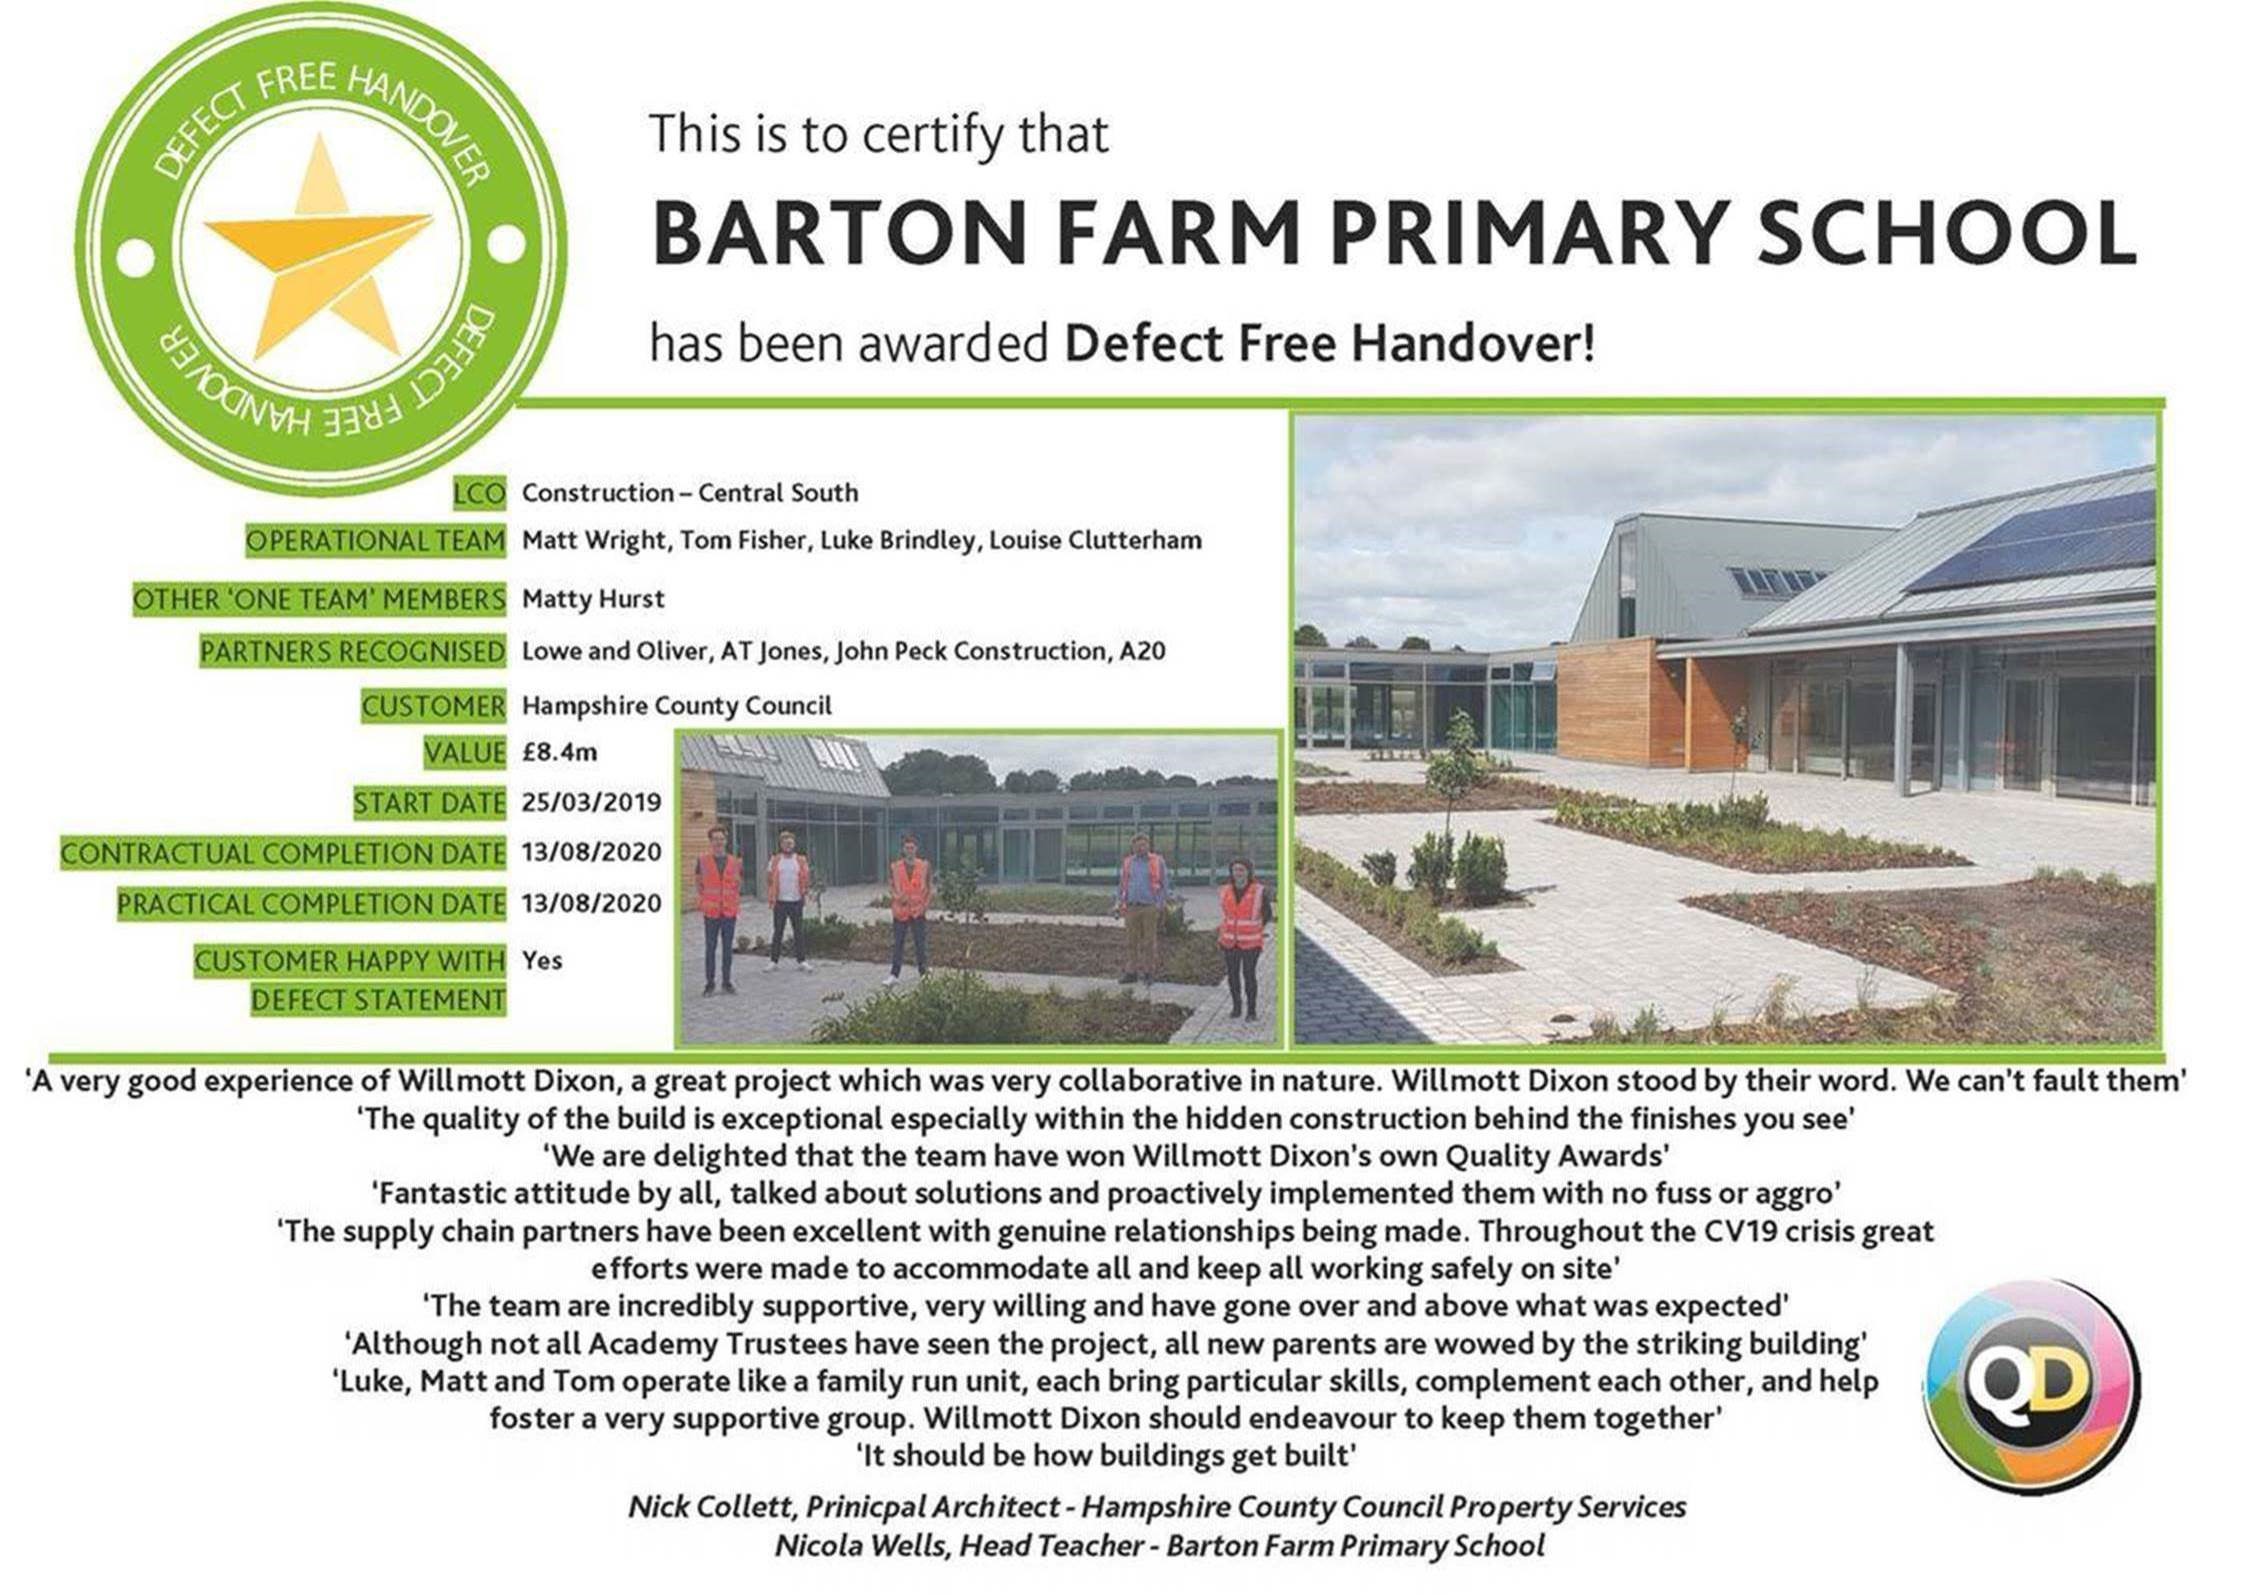 Barton Farm Primary School - Defect Free Handover